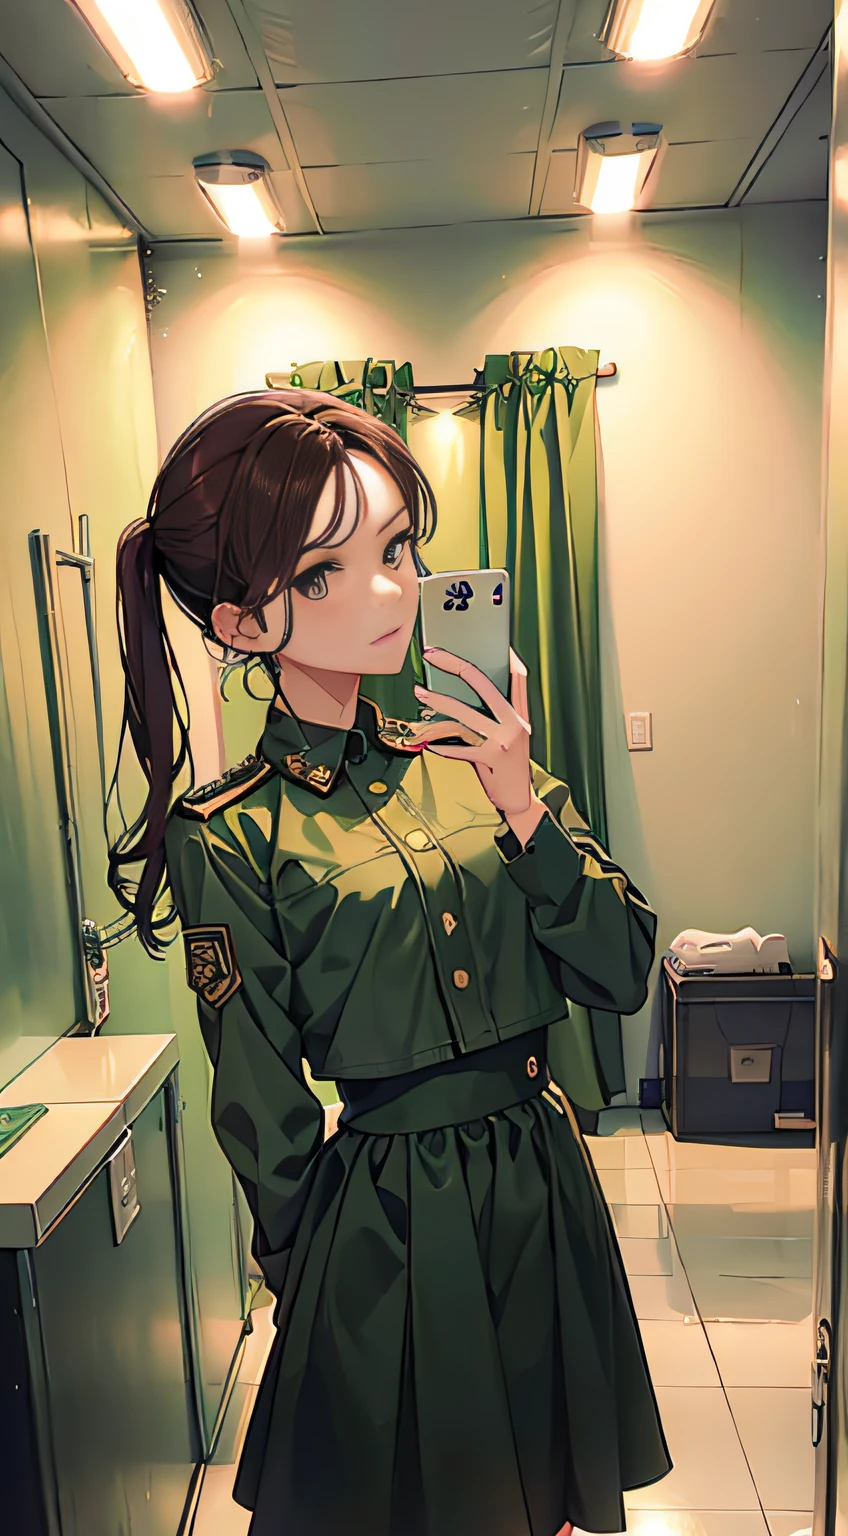 공공 화장실 거울에서 셀카를 찍는 녹색 제복을 입은 여자, 댕 내 영혼아, 군인 소녀, 군복을 입고, 군복을 입고, 매우 매우 낮은 품질의 사진, 제복을 입은 소녀, 군복을 입고, 프로필 사진, 예 웬페이, 군복을 입고, 내일 트랜 형제, 더러운 군복을 입고, 프로필 이미지, 군인복을 입고, 프로필 사진ture